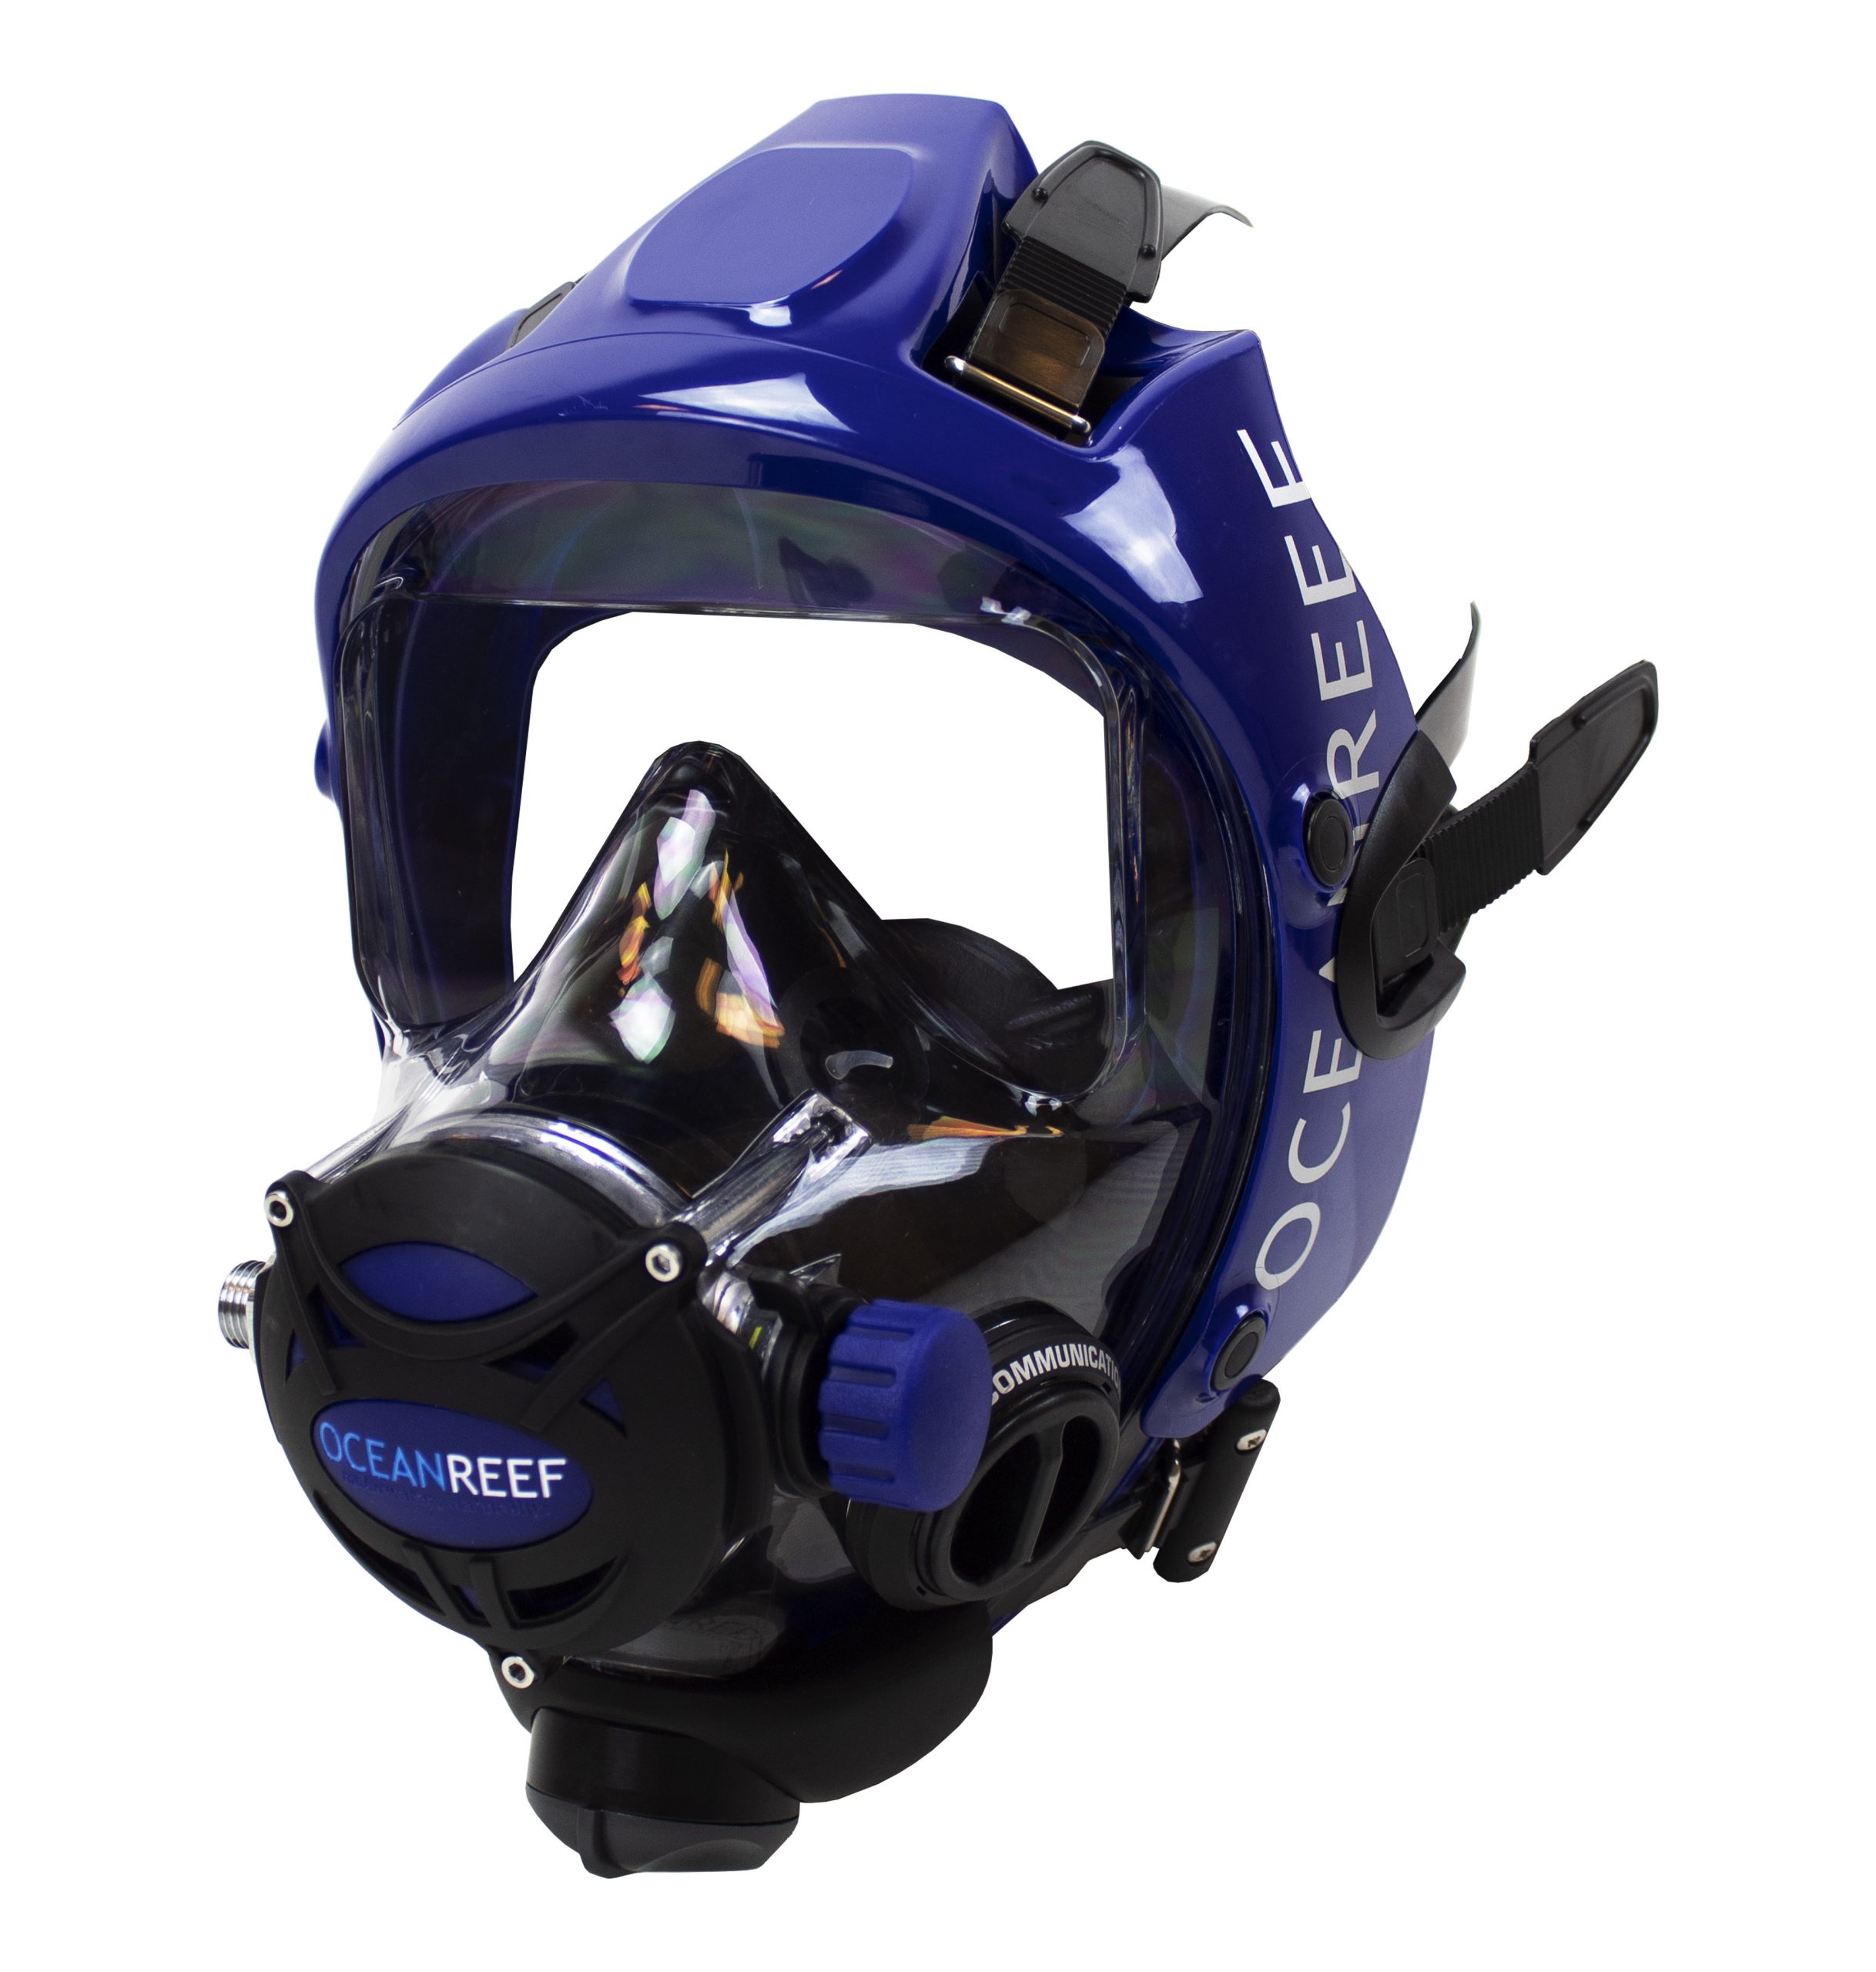 OceanReef Space Extender Full Face Mask